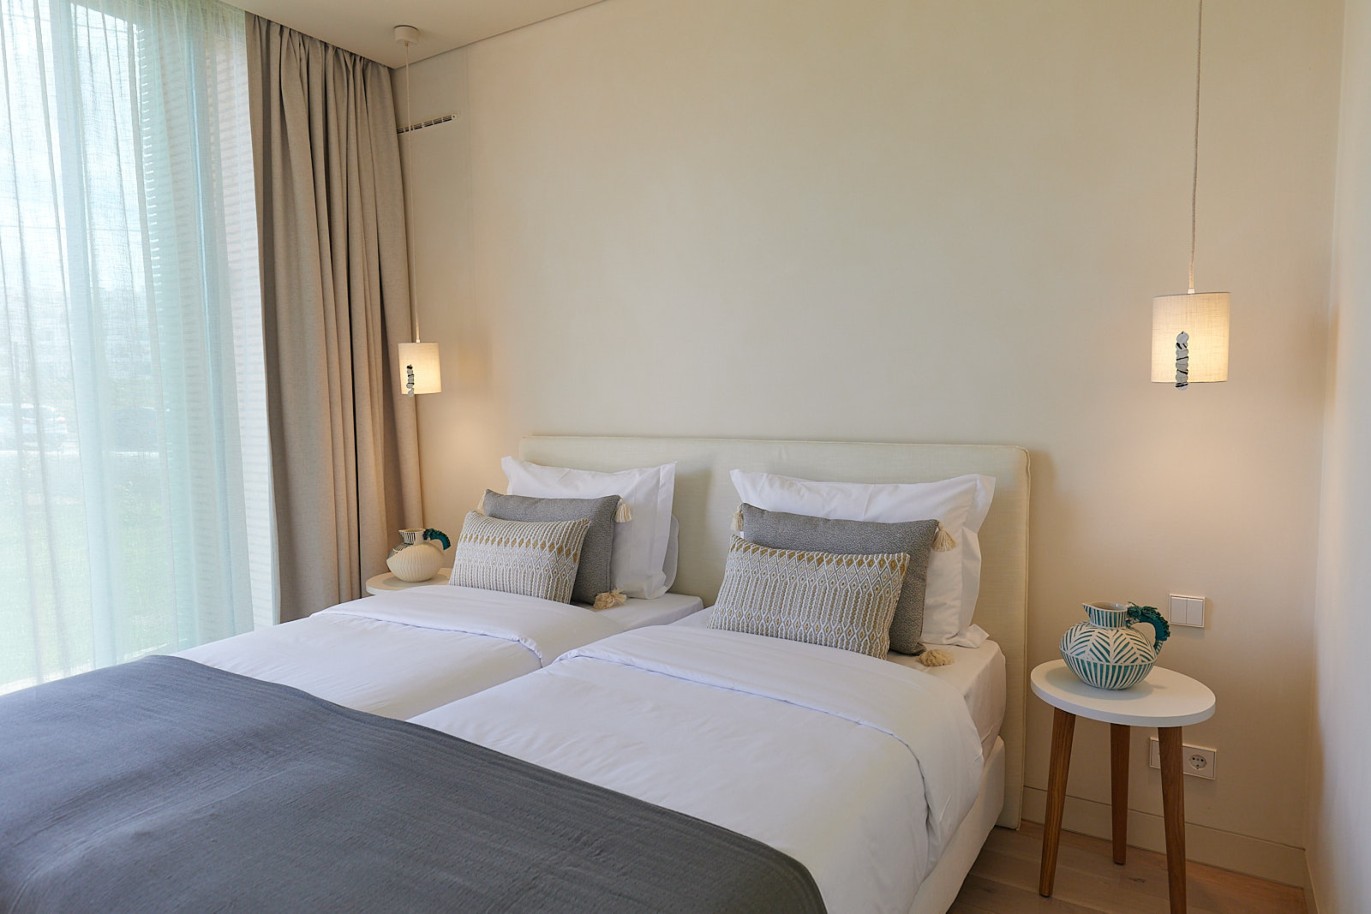 3 bedroom flat in resort, for sale in Porches, Algarve_230740